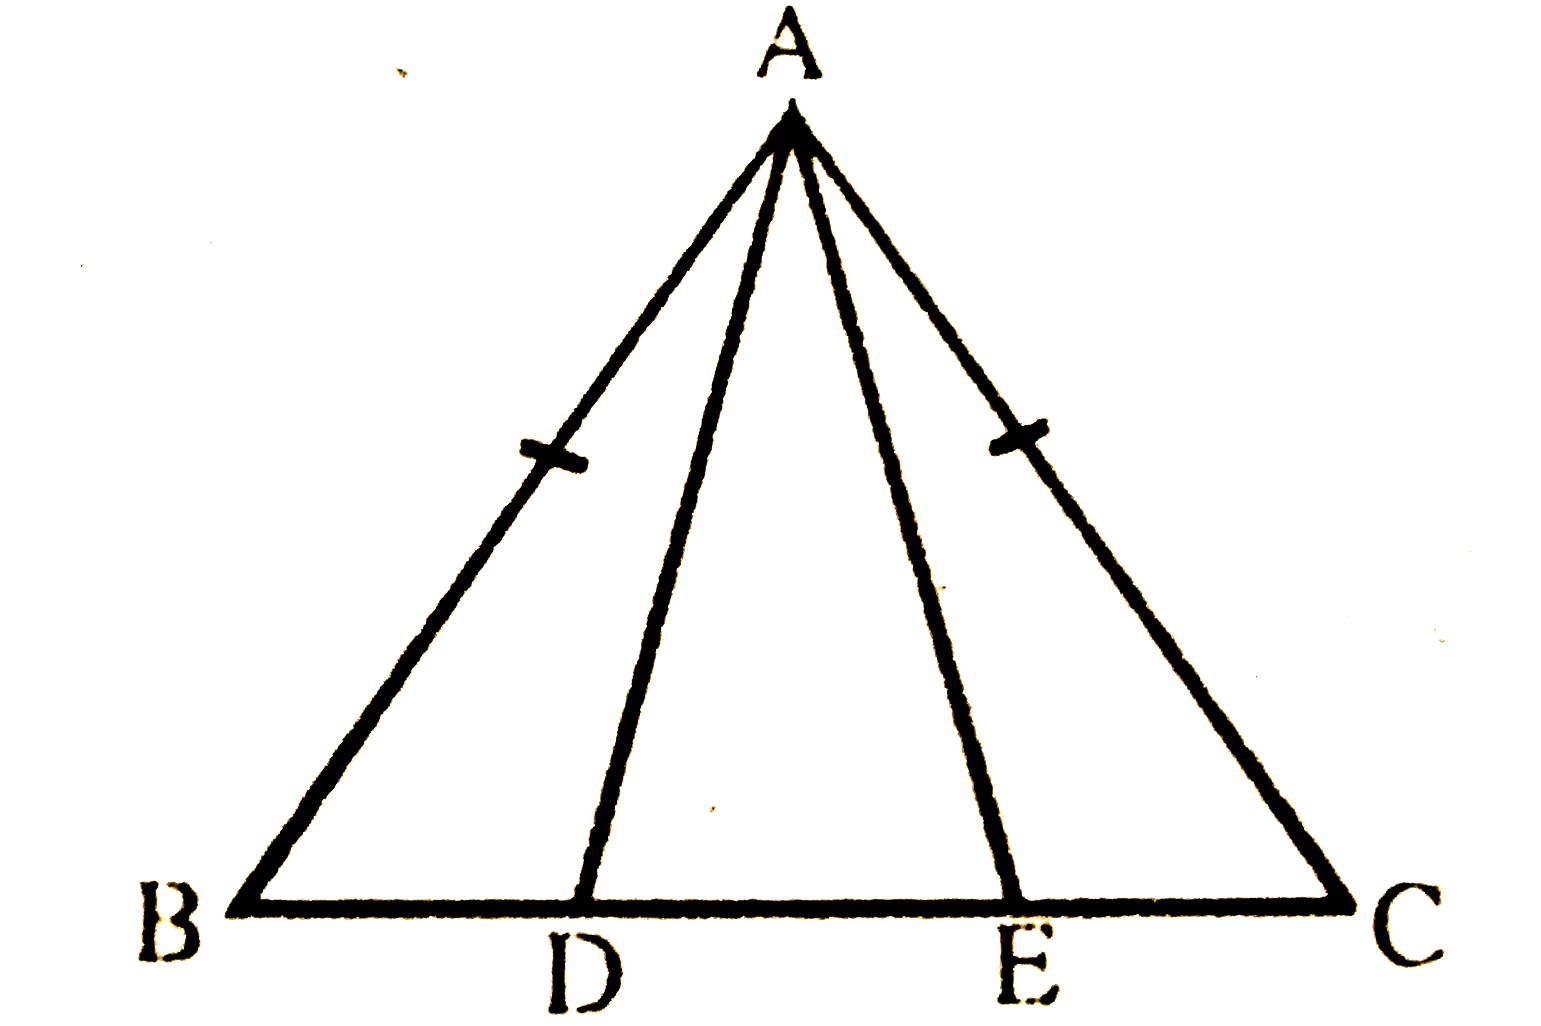 एक समद्विबाहु त्रिभुज ABC जिसमें AB = AC है, की भुजा BC पर दो बिंदु D और E इस प्रकार हैं कि BE = CD है (देखिए चित्र) | दर्शाइए कि AD = AE है |